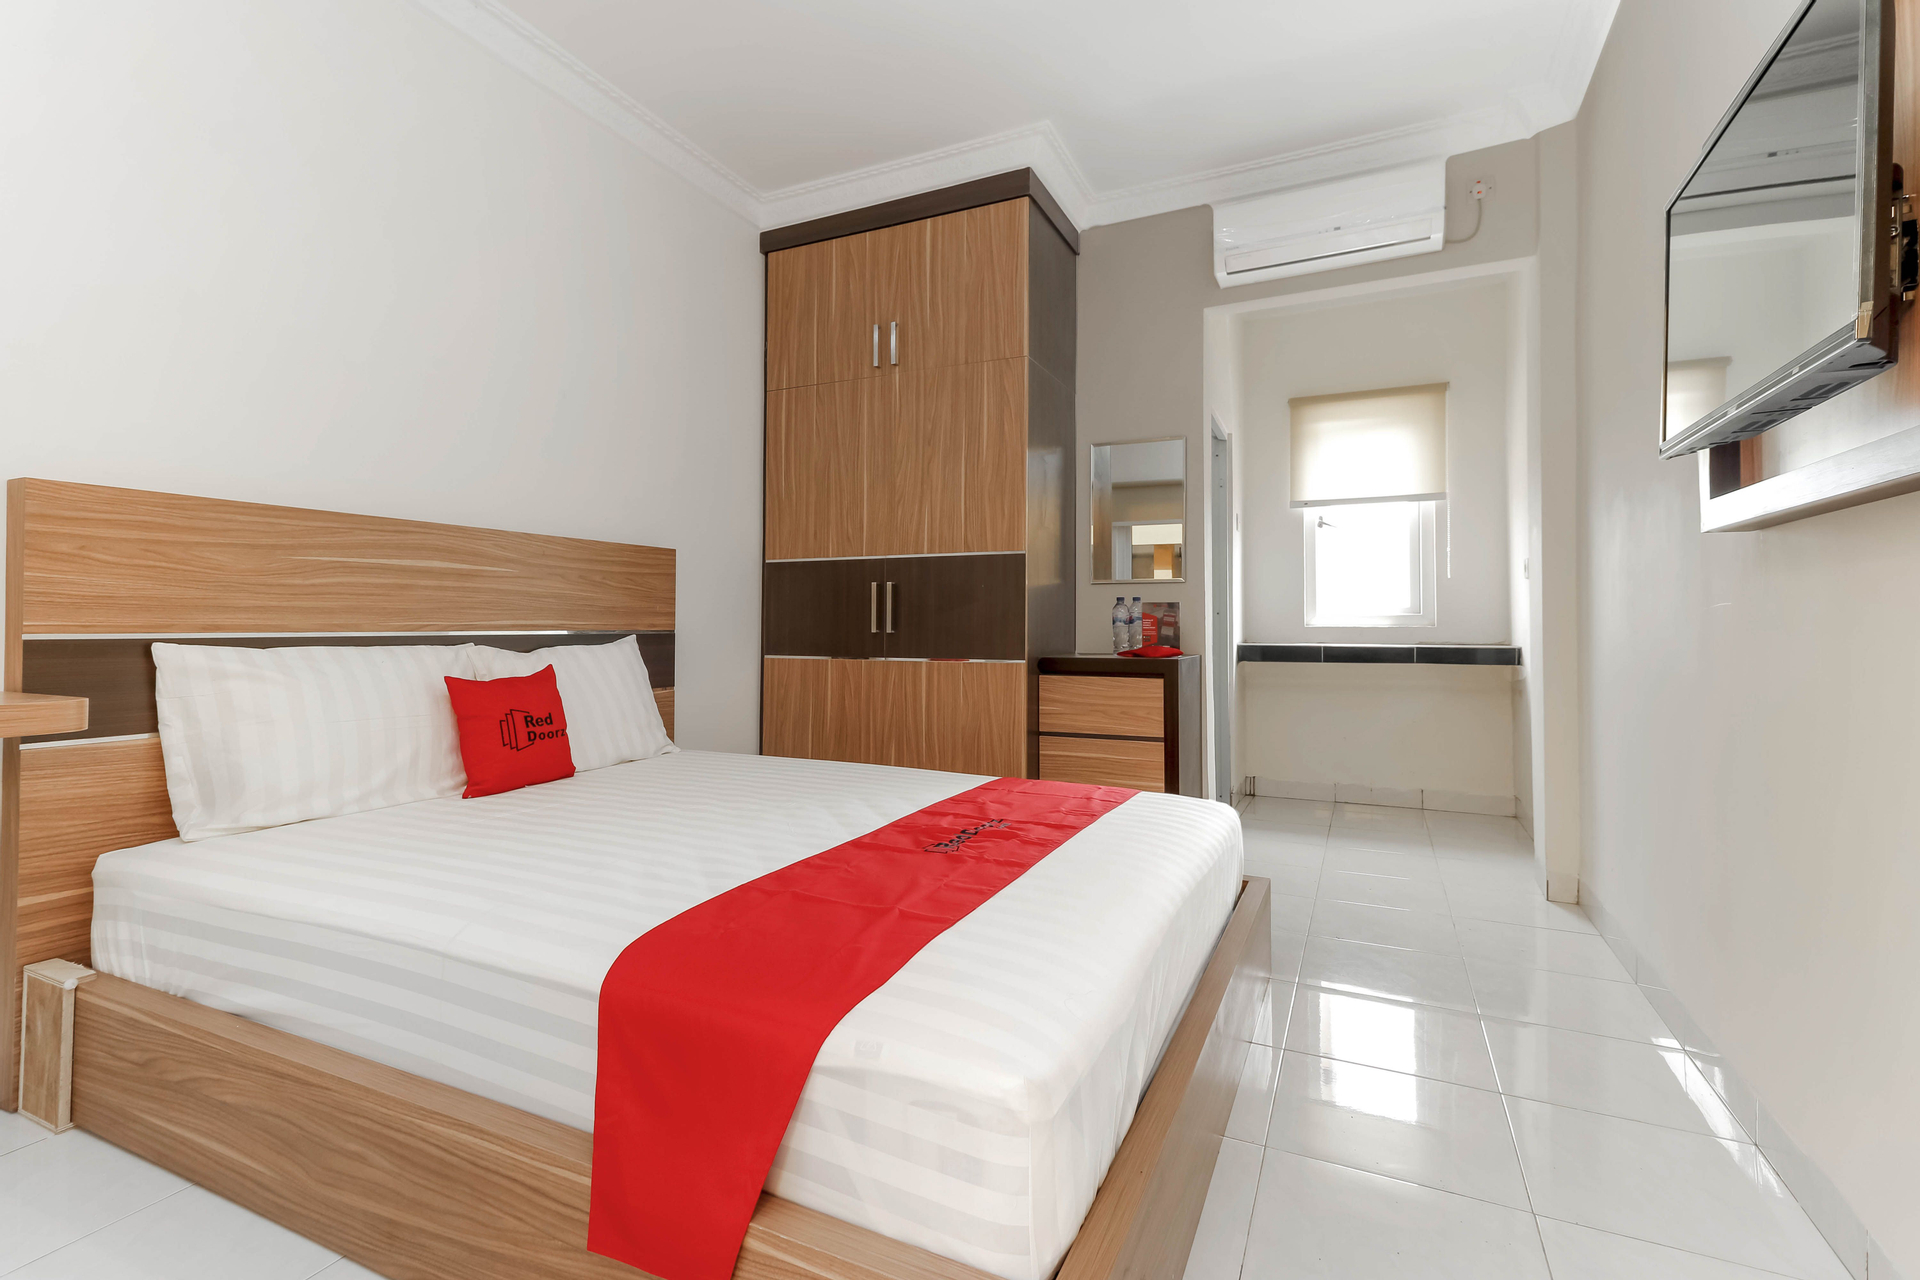 Bedroom 1, RedDoorz Plus near Palembang Square Mall, Palembang